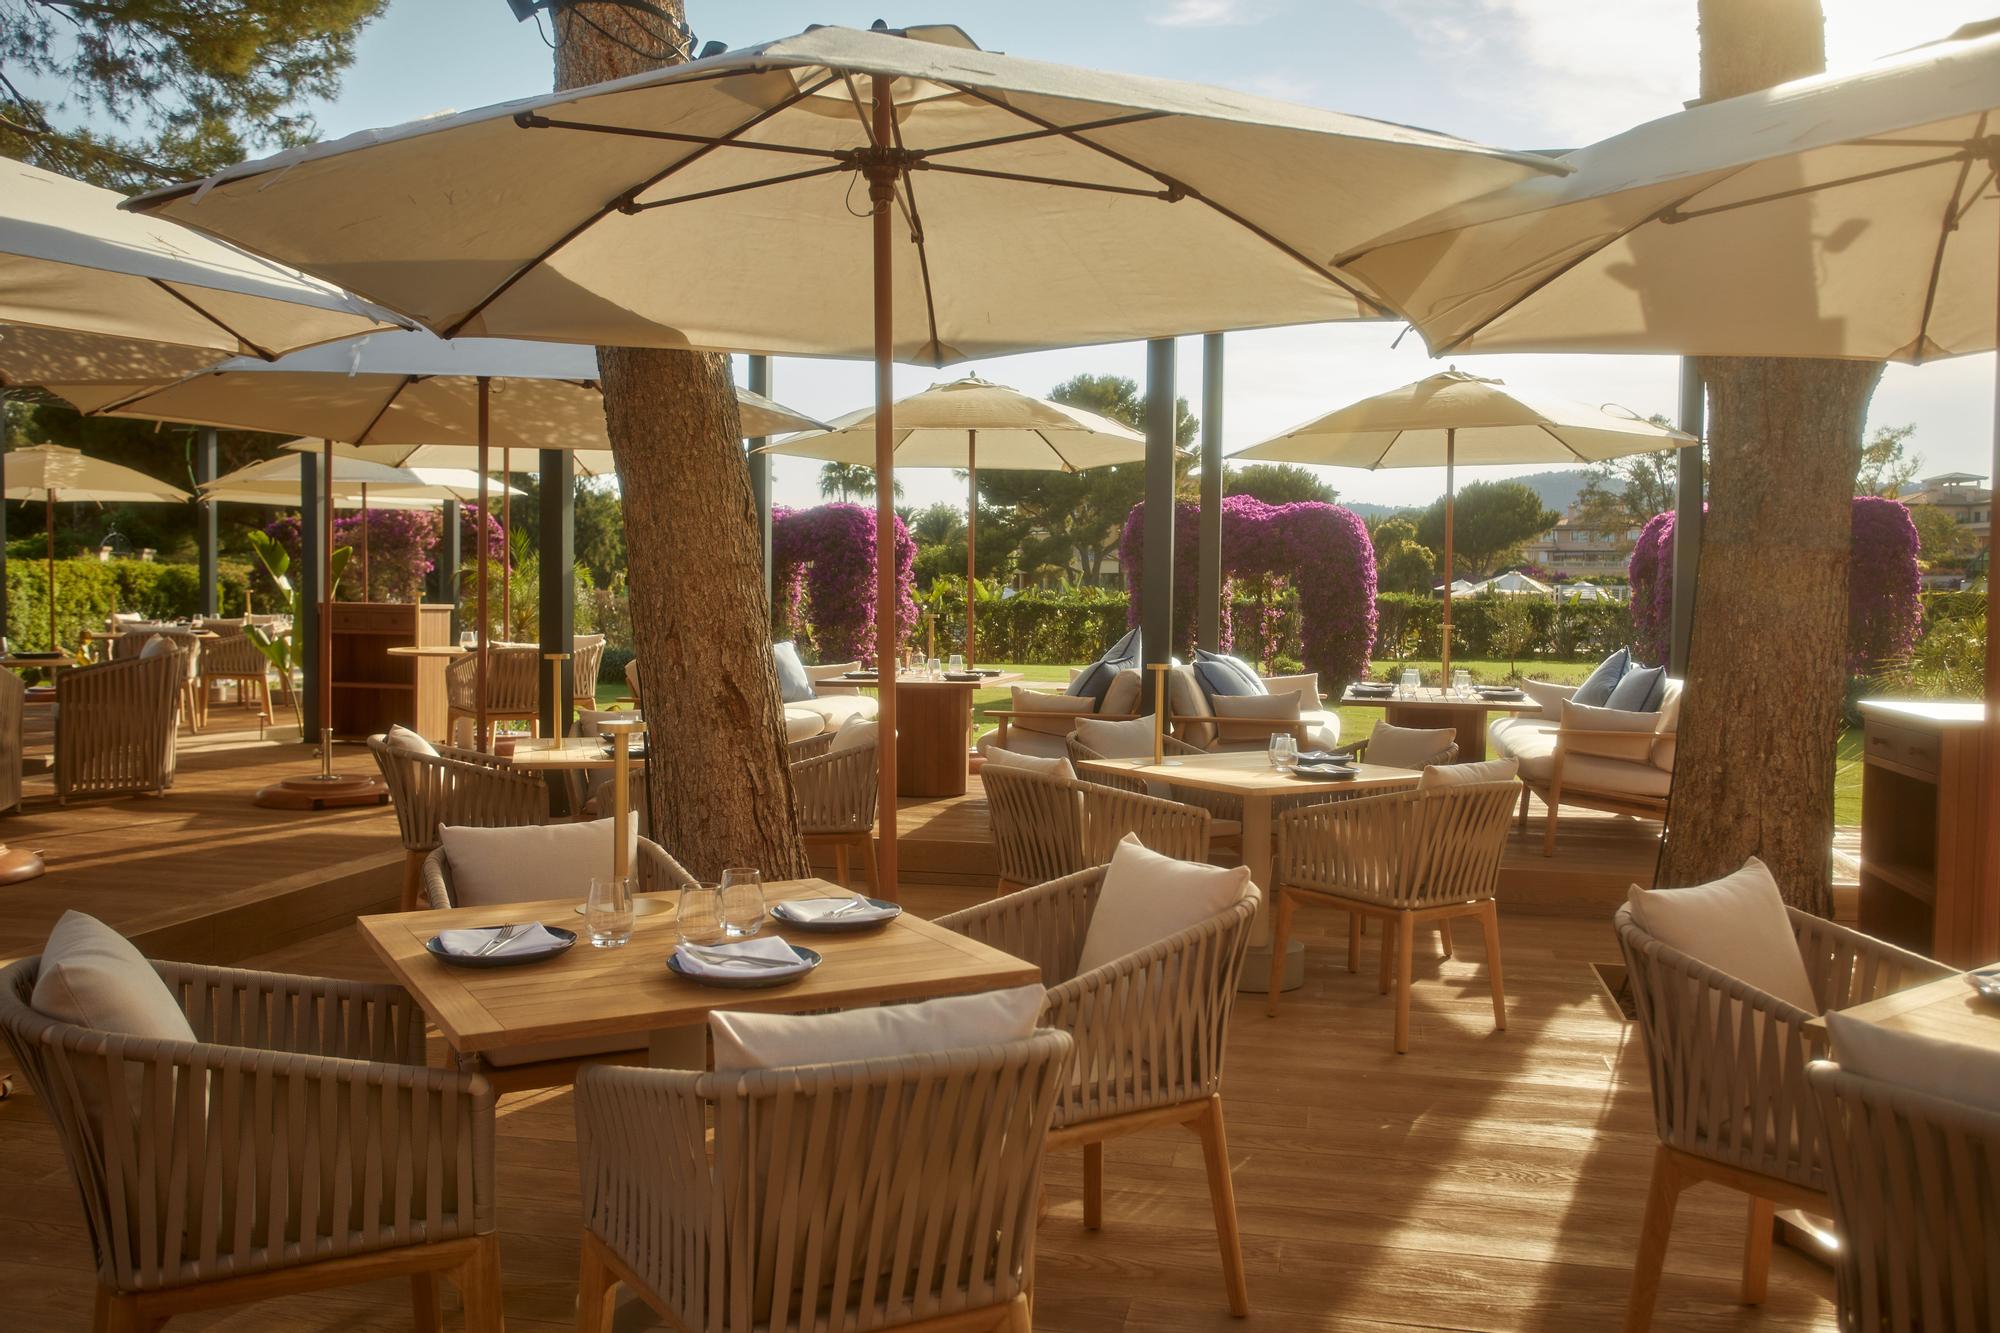 St. Regis Mardavall Mallorca Resort inaugura Mar Sea Club, la experiencia gastronómica más mediterránea del verano